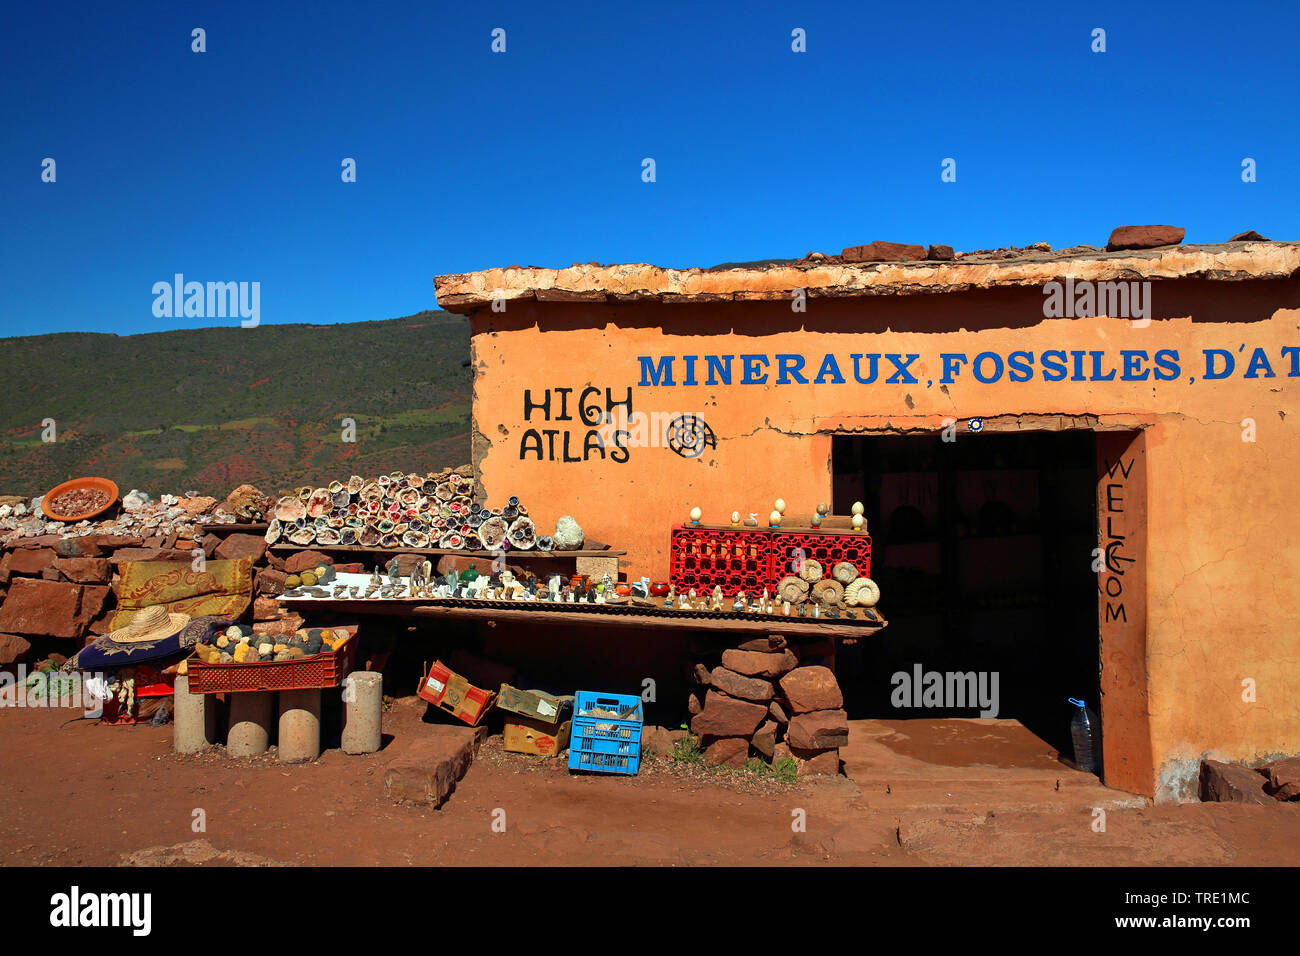 Vente de minéraux et fossiles, Maroc, Tizi-n-ait Imguer Banque D'Images